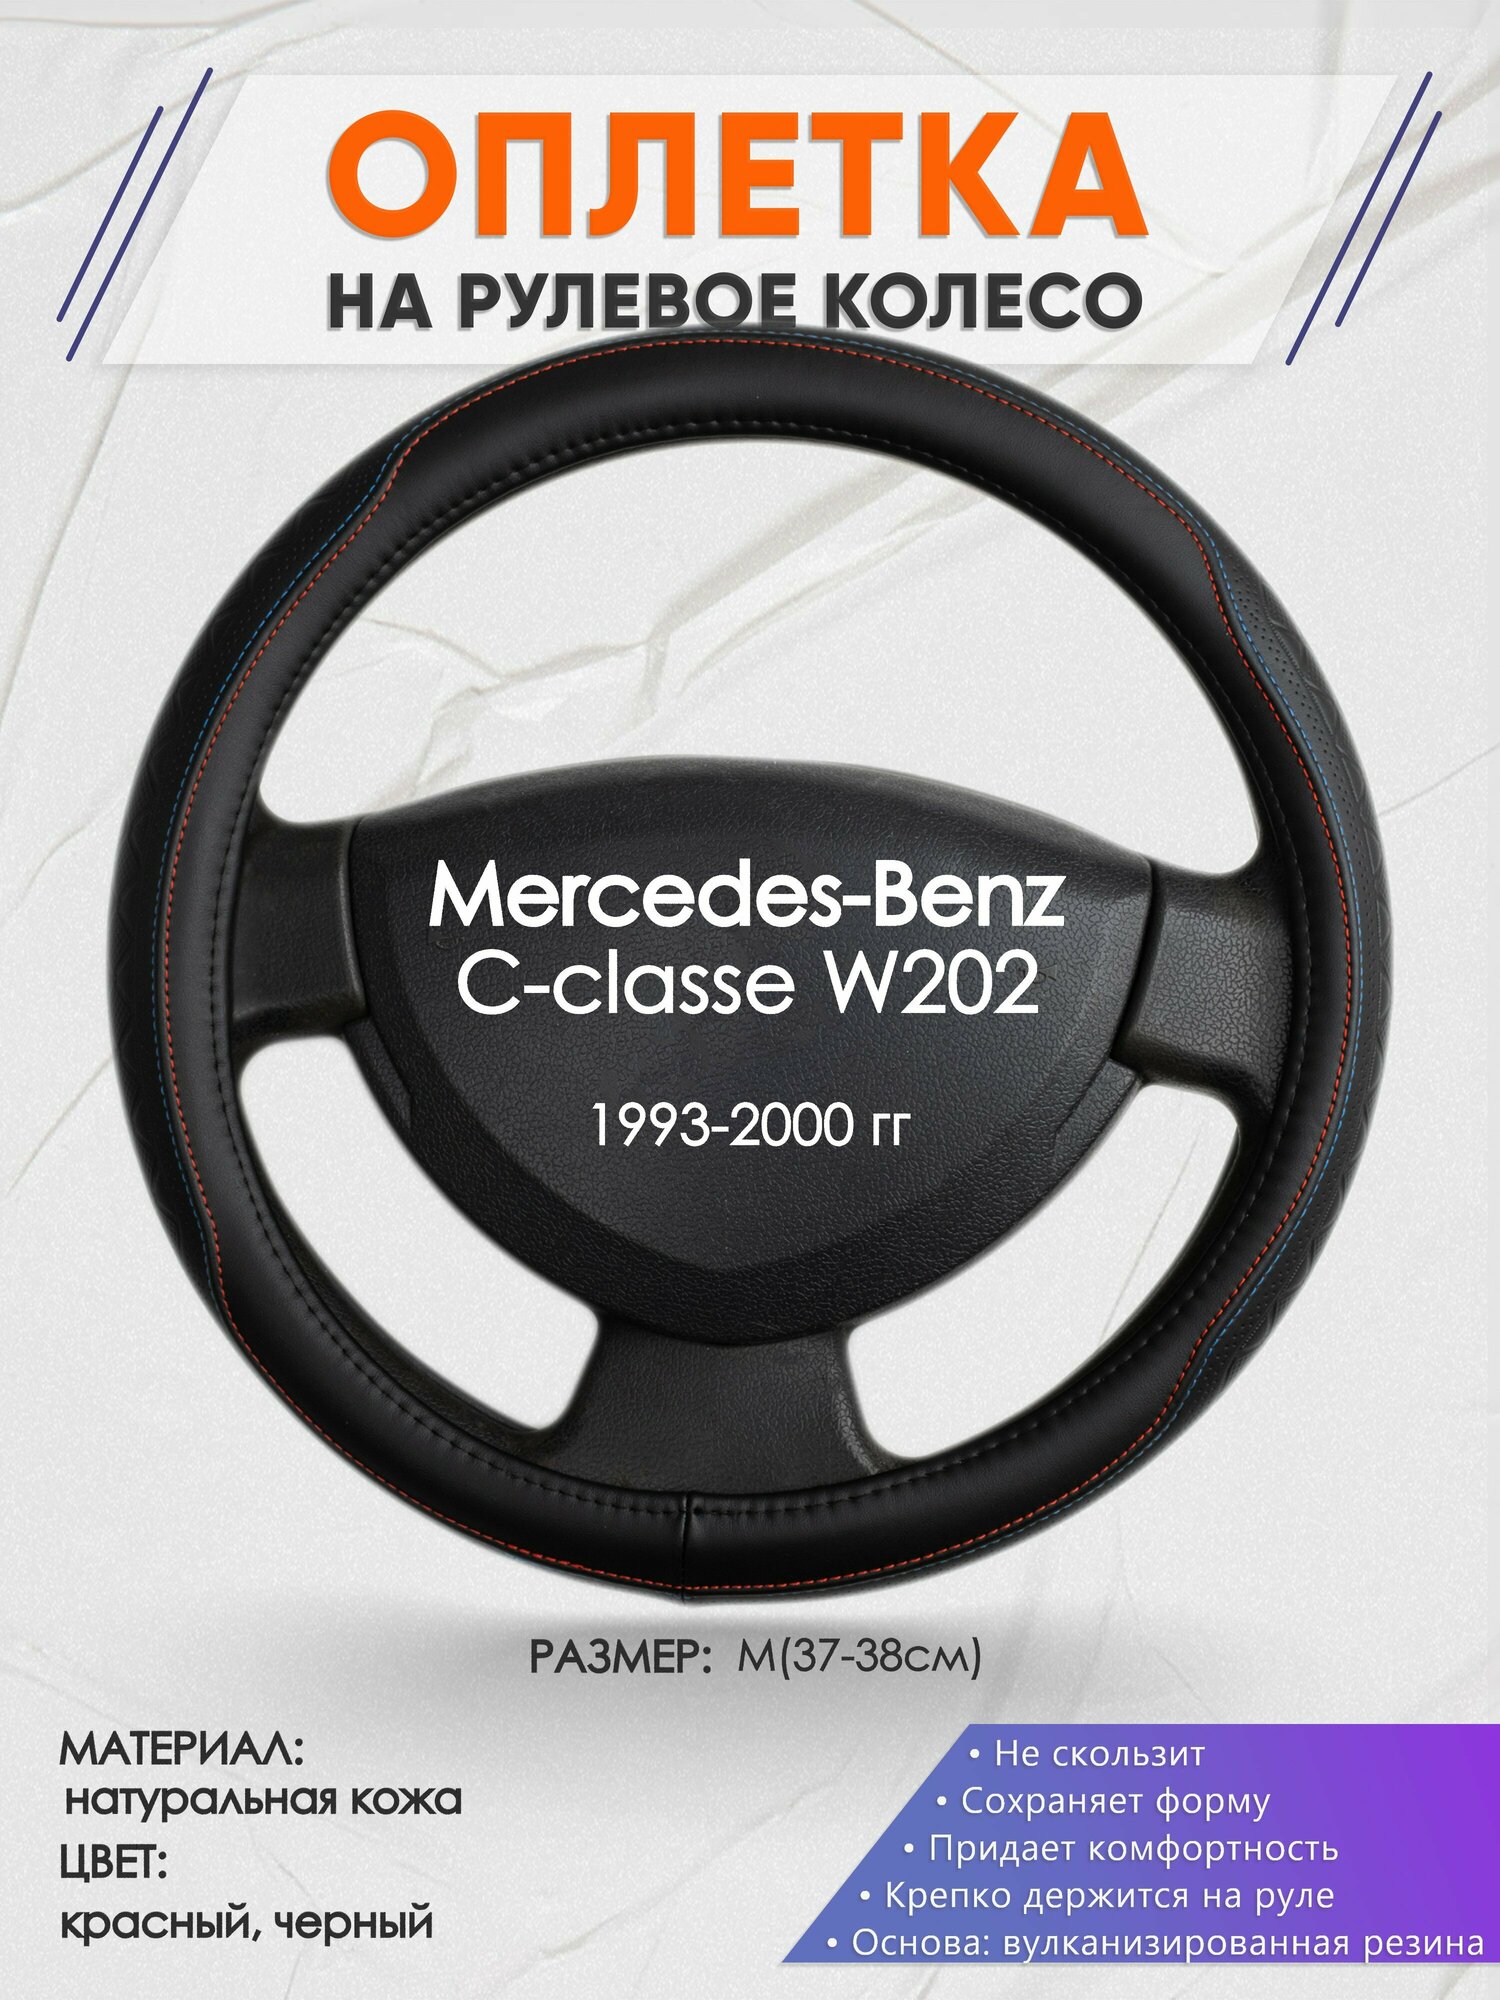 Оплетка на руль для Mercedes-Benz W202(Мерседес Бенц Ц класс в202) 1993-2000, M(37-38см), Натуральная кожа 89